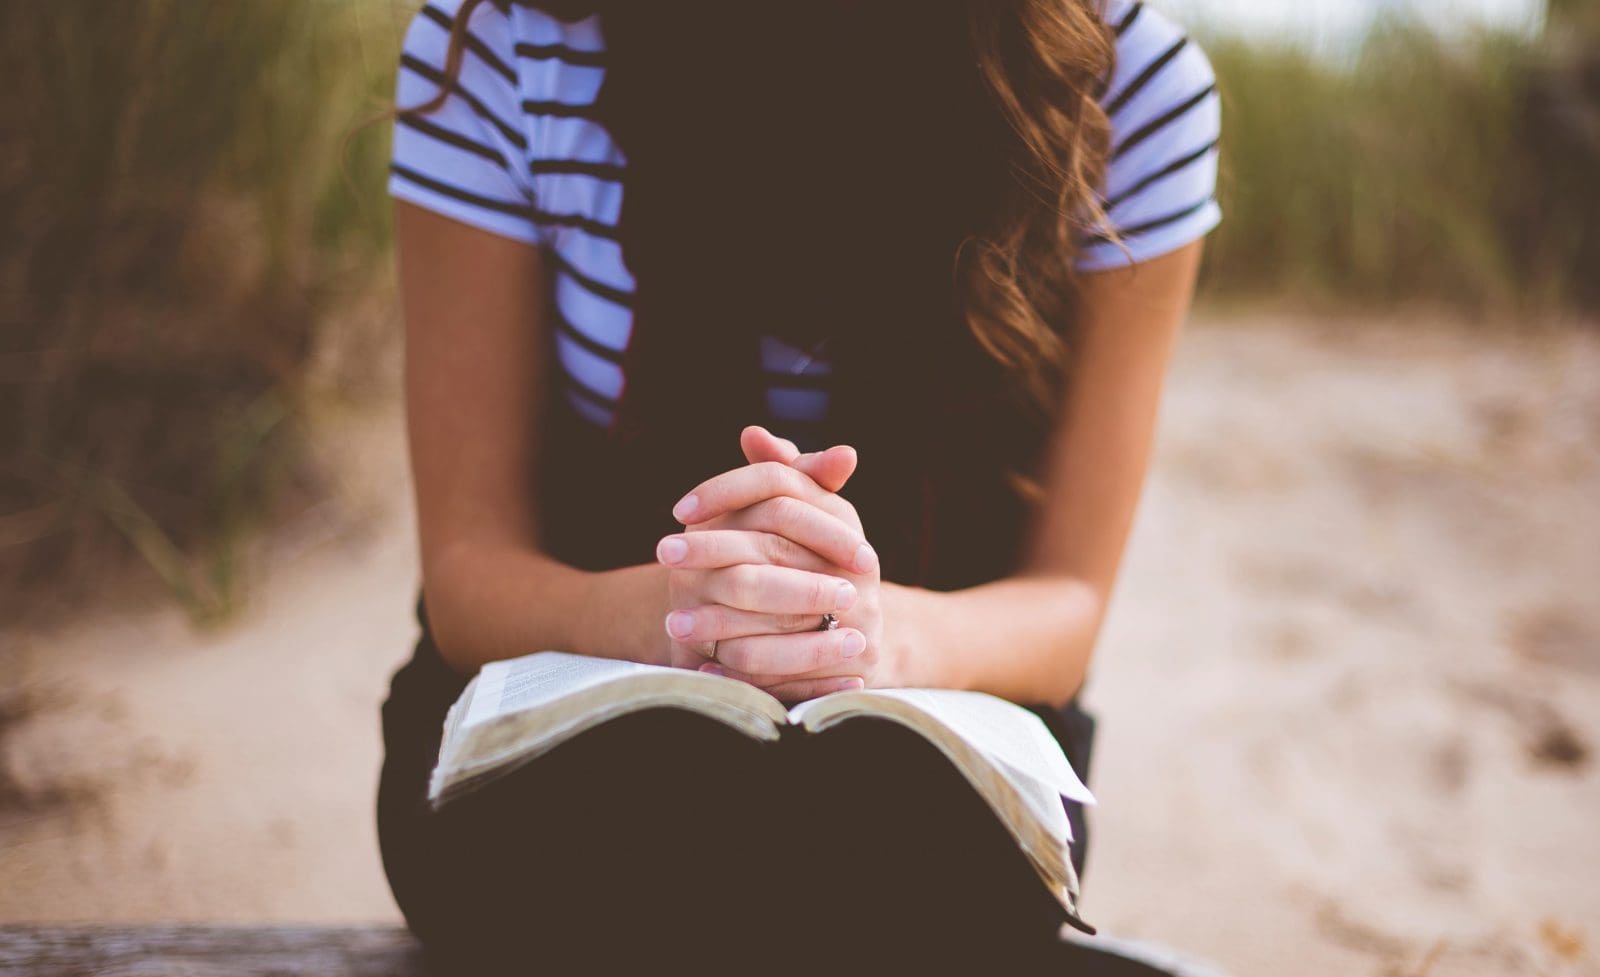 Praying While Reading the Bible